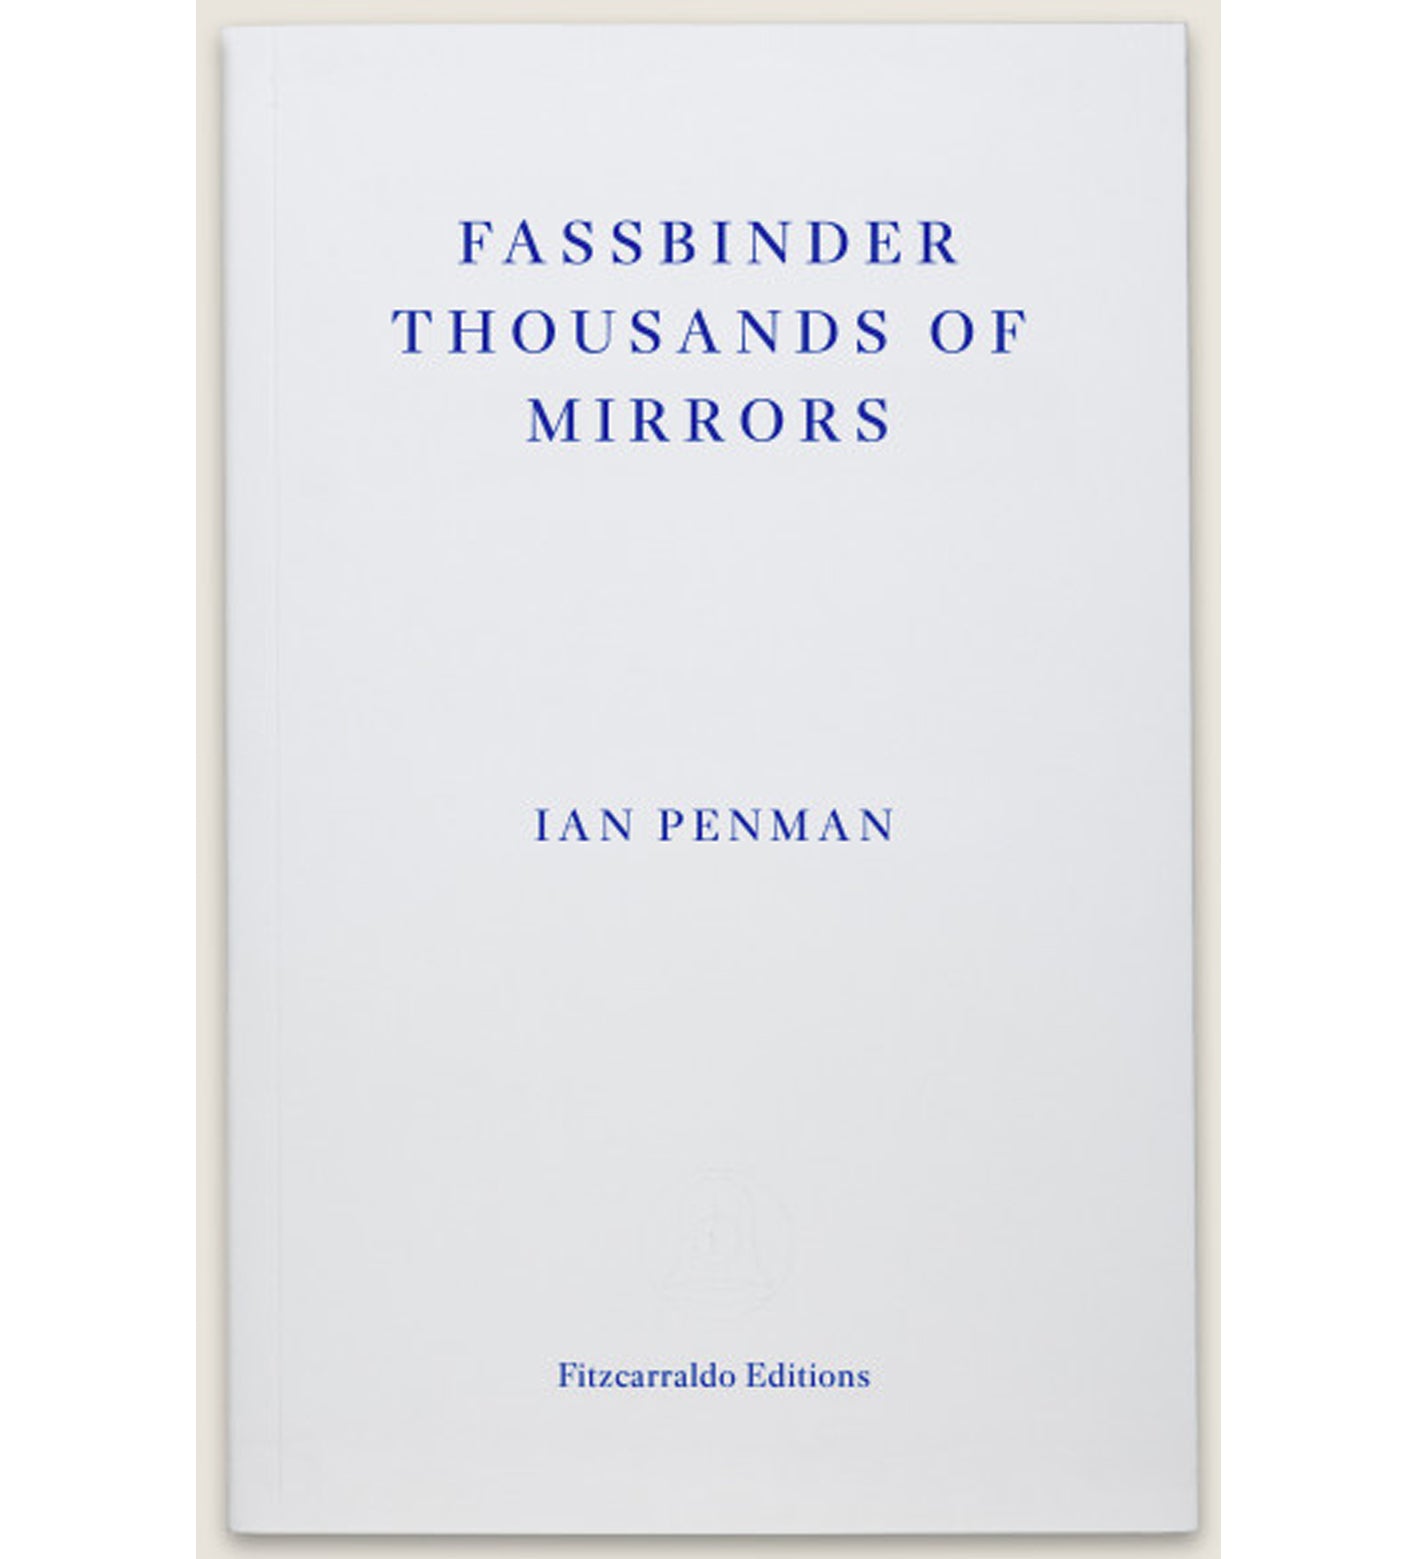 Ian Penman: Fassbinder Thousands of Mirrors